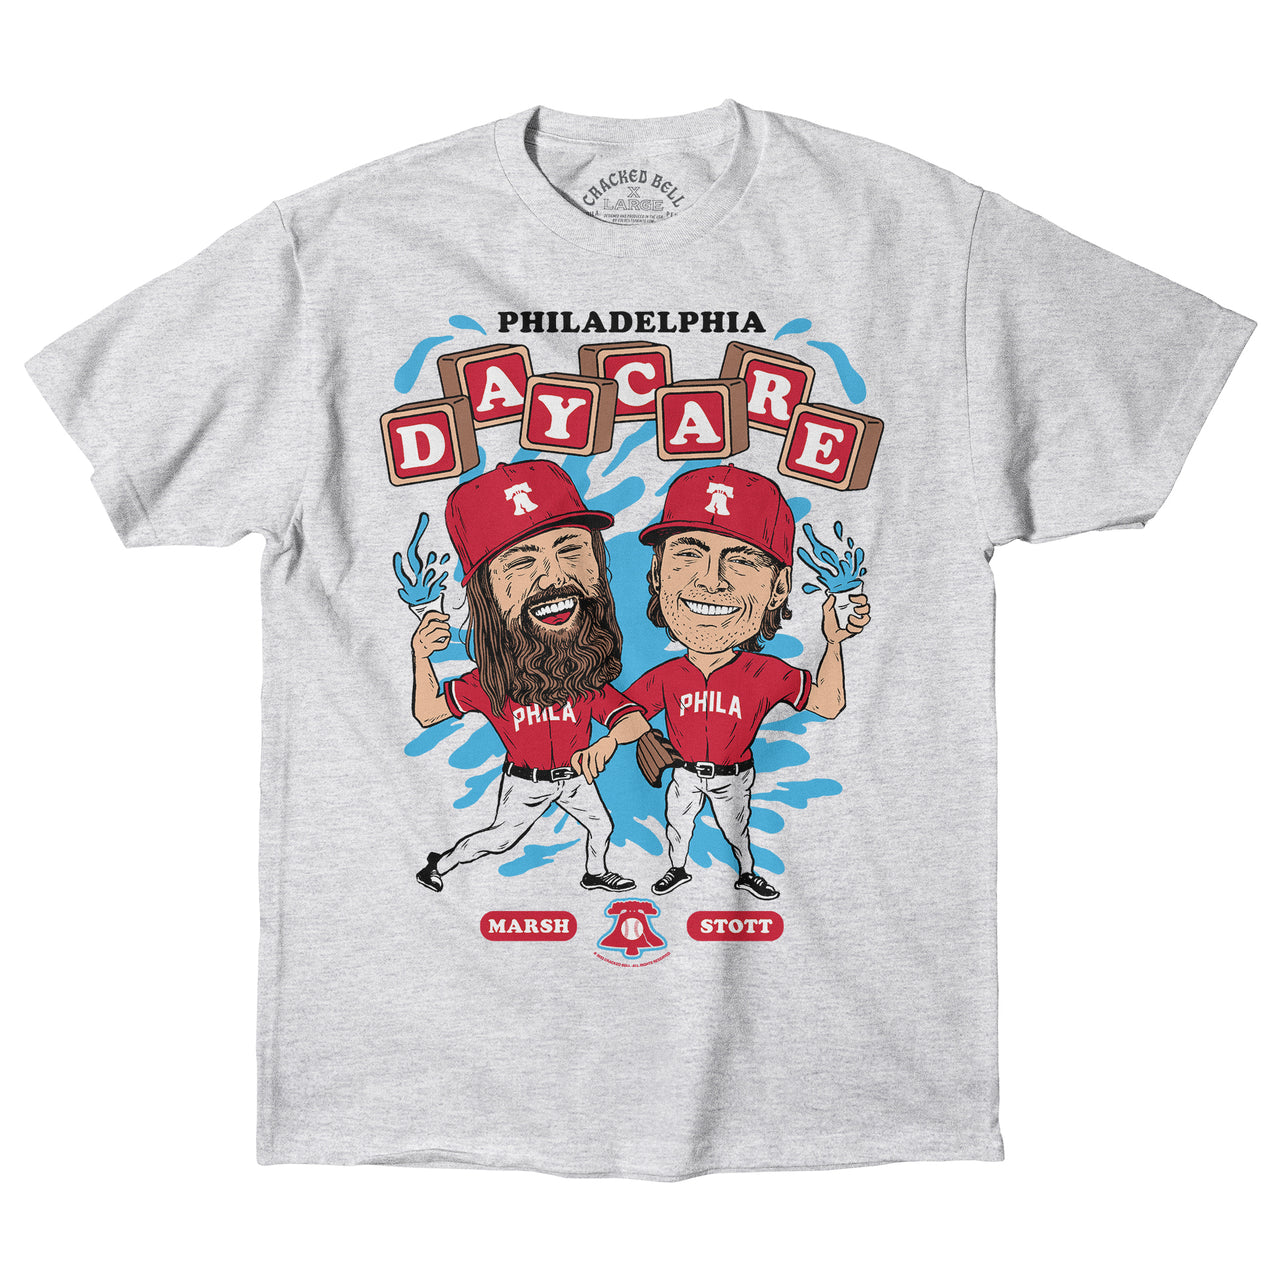 "Daycare" Shirt